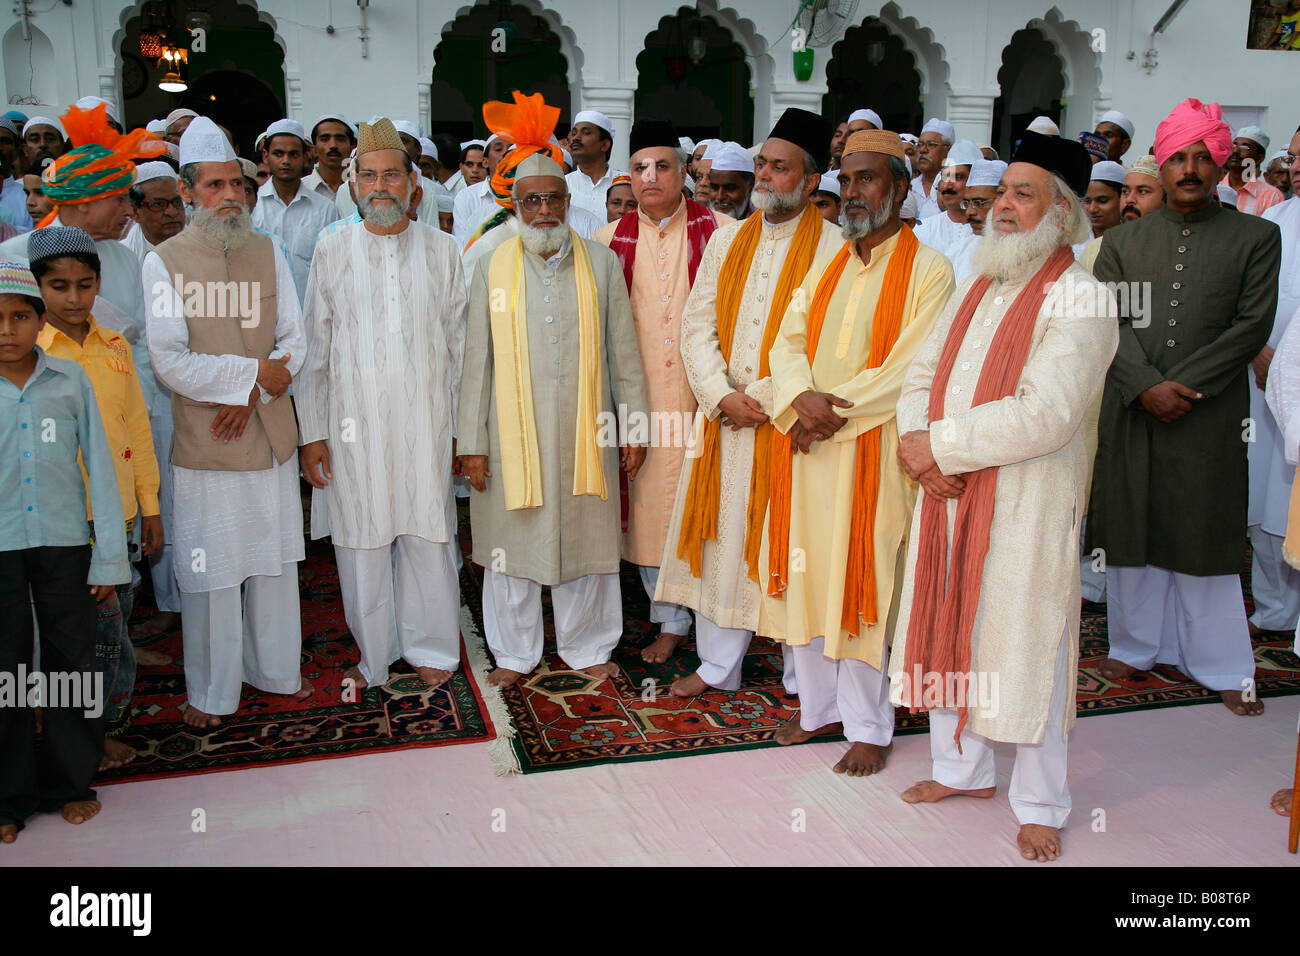 Des dignitaires musulmans, invités à un mariage, Soufi Sufi culte, Bareilly, Uttar Pradesh, Inde, Asie Banque D'Images